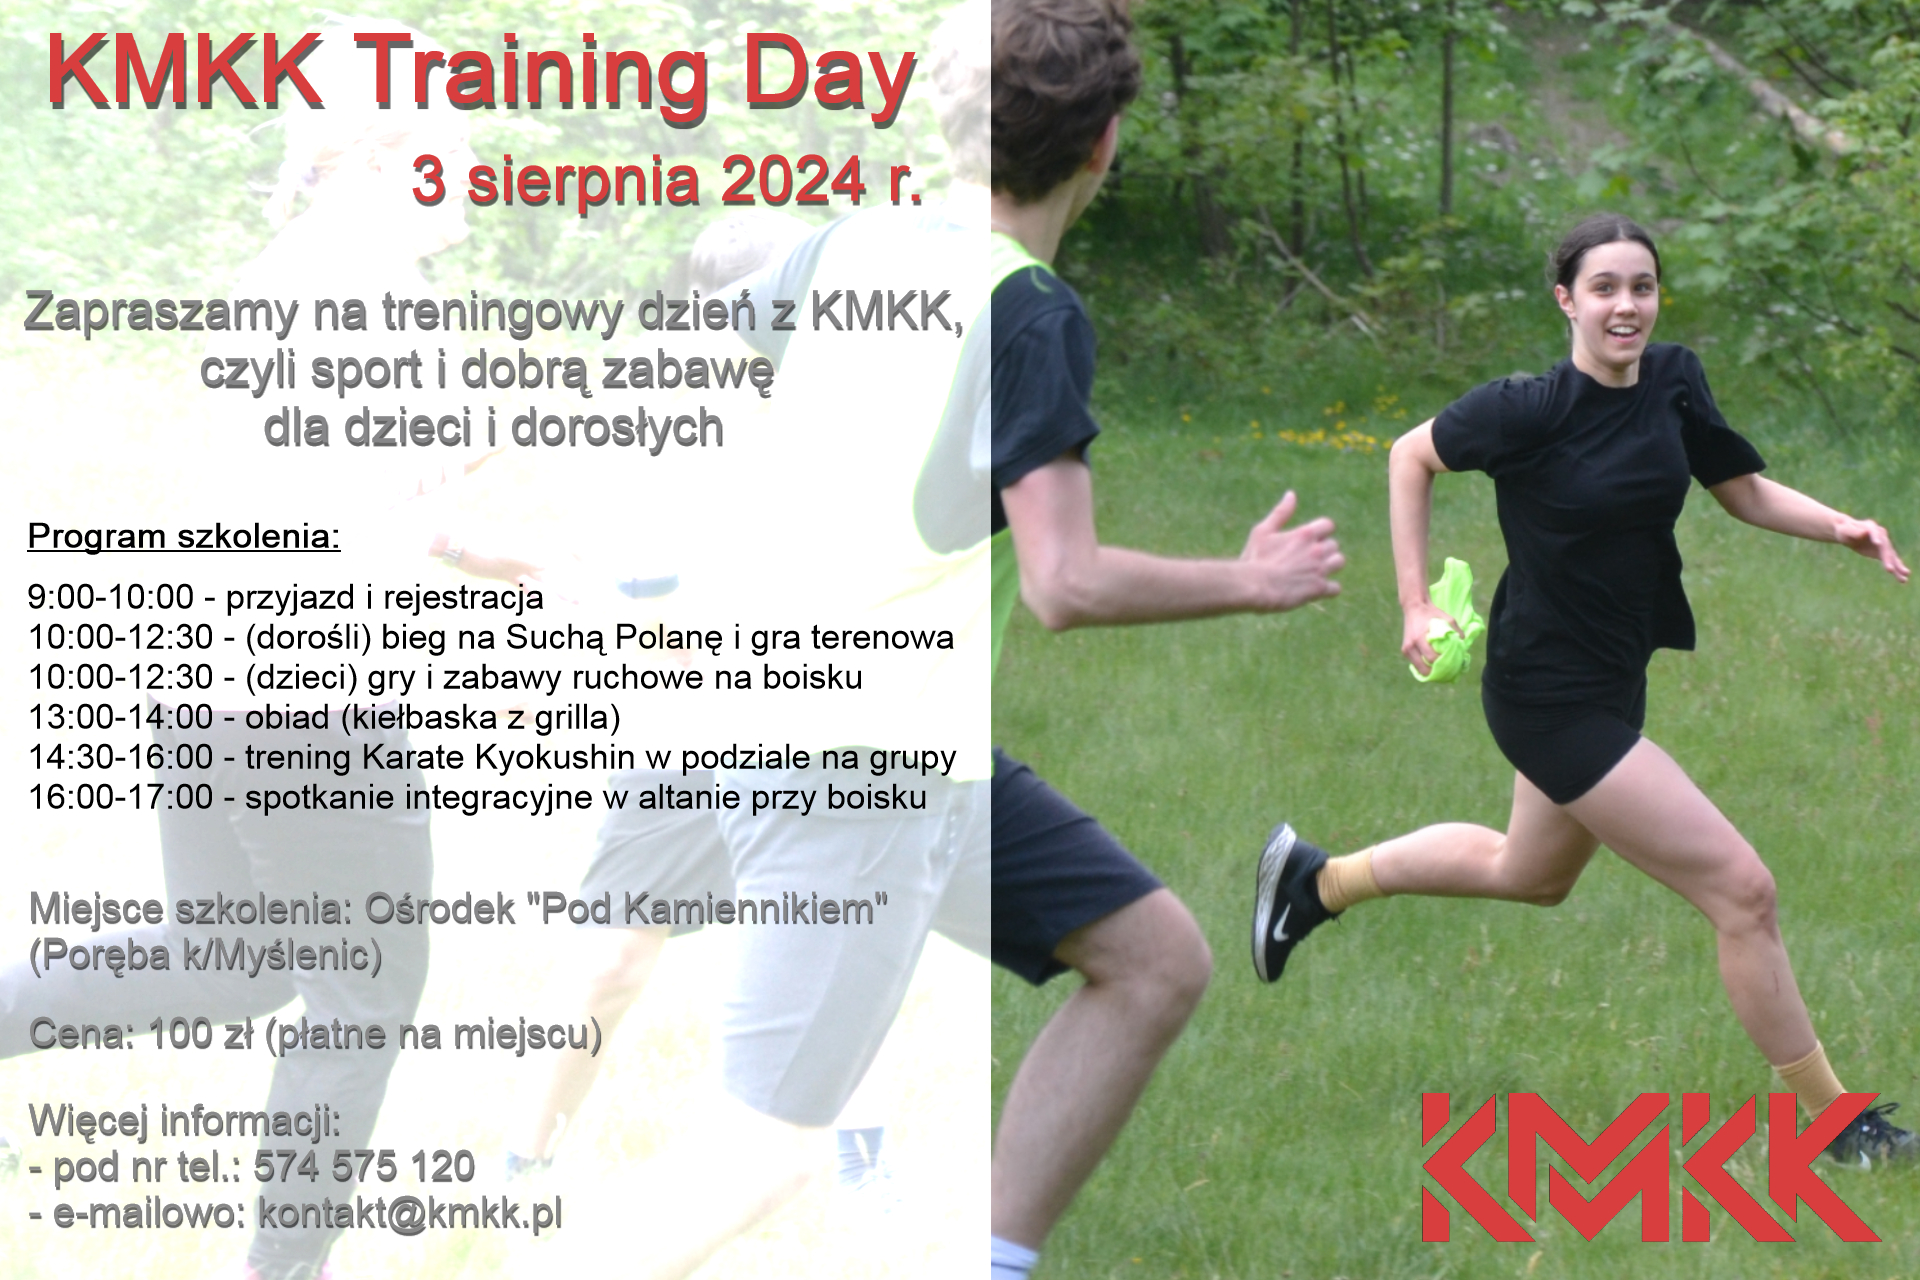 KMKK Training Day